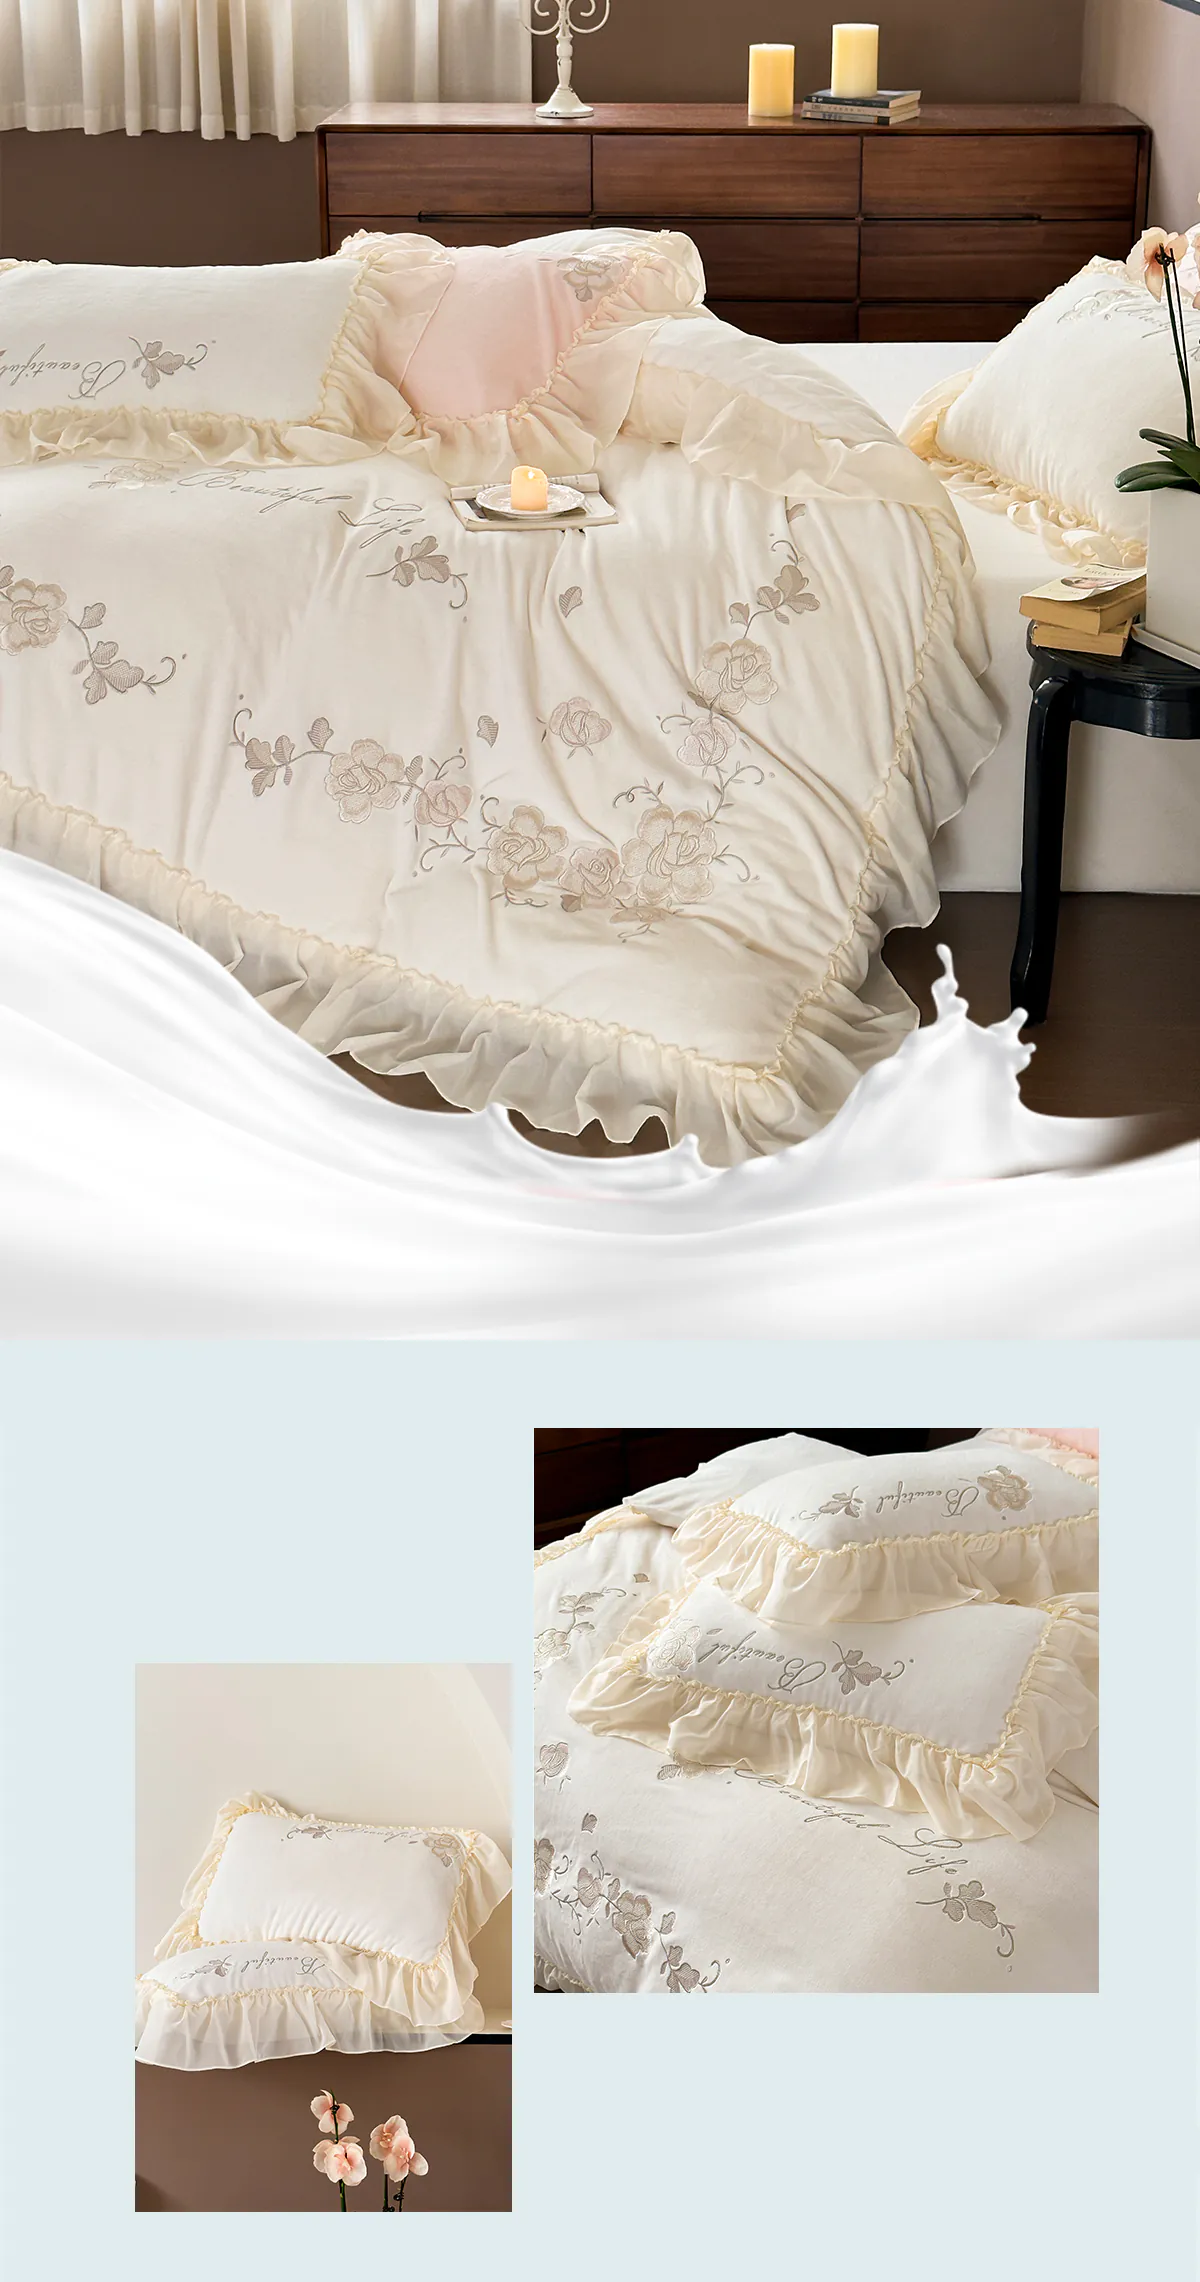 Aesthetic-Soft-Milk-Fiber-Duvet-Cover-Bed-Sheet-Pillowcases-4-Pcs-Set17